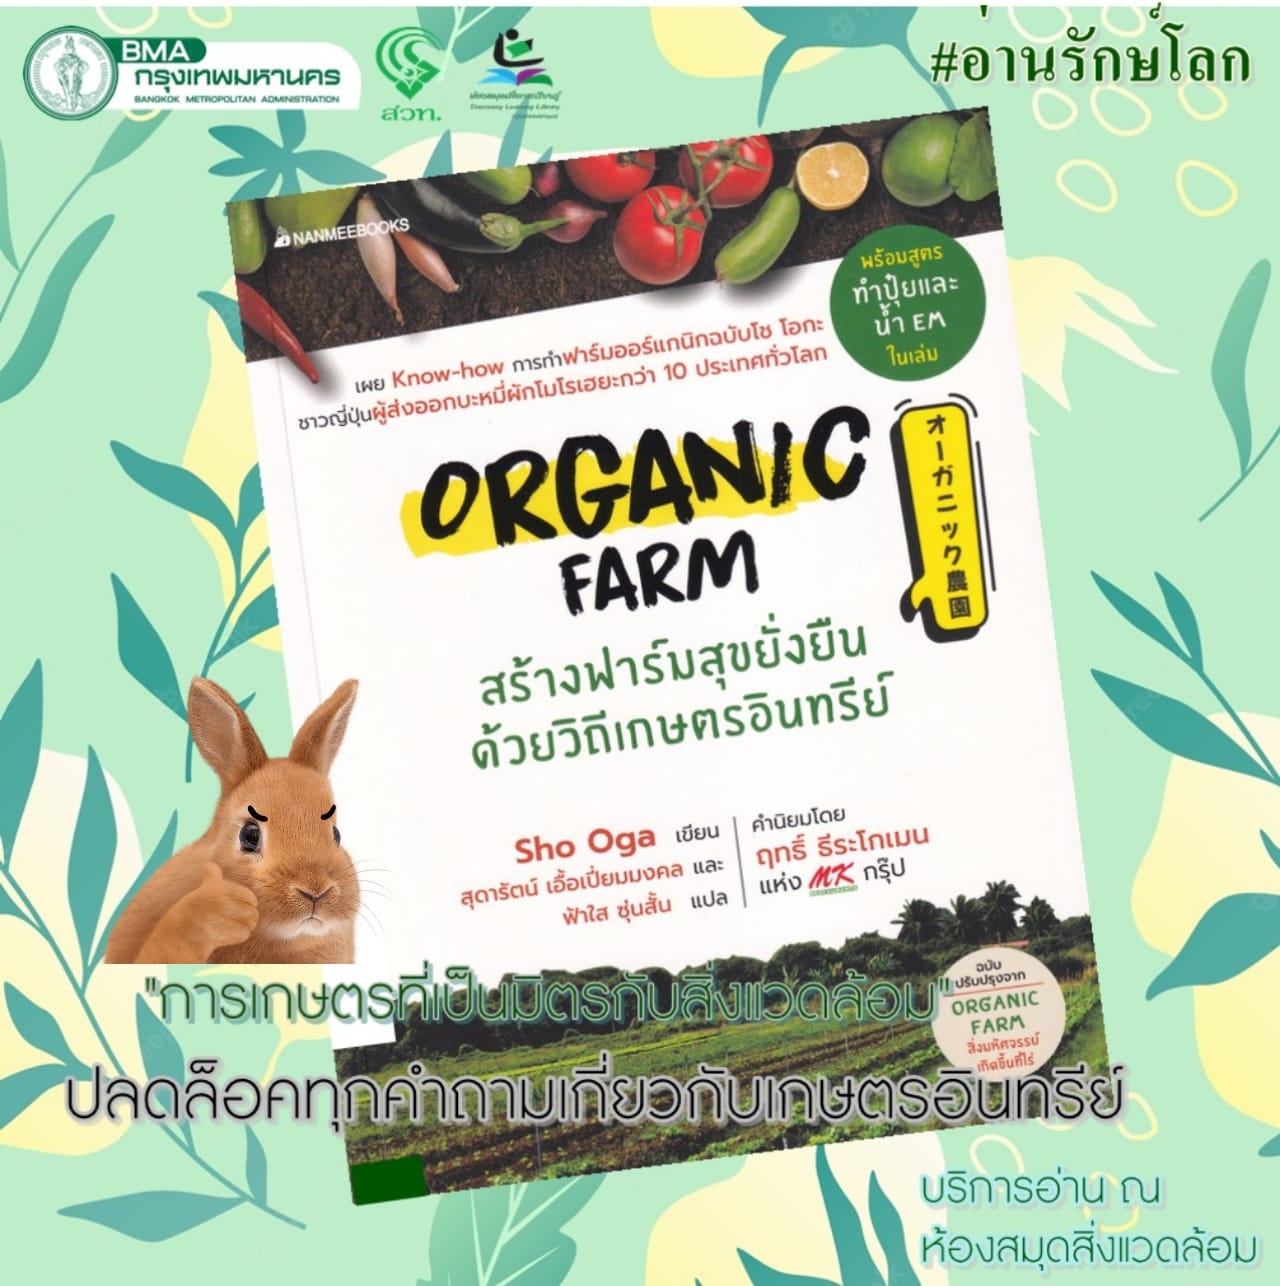 ORGANIC FARM สร้างฟาร์มสุขยั่งยืนด้วยวิถีเกษตรอินทรีย์